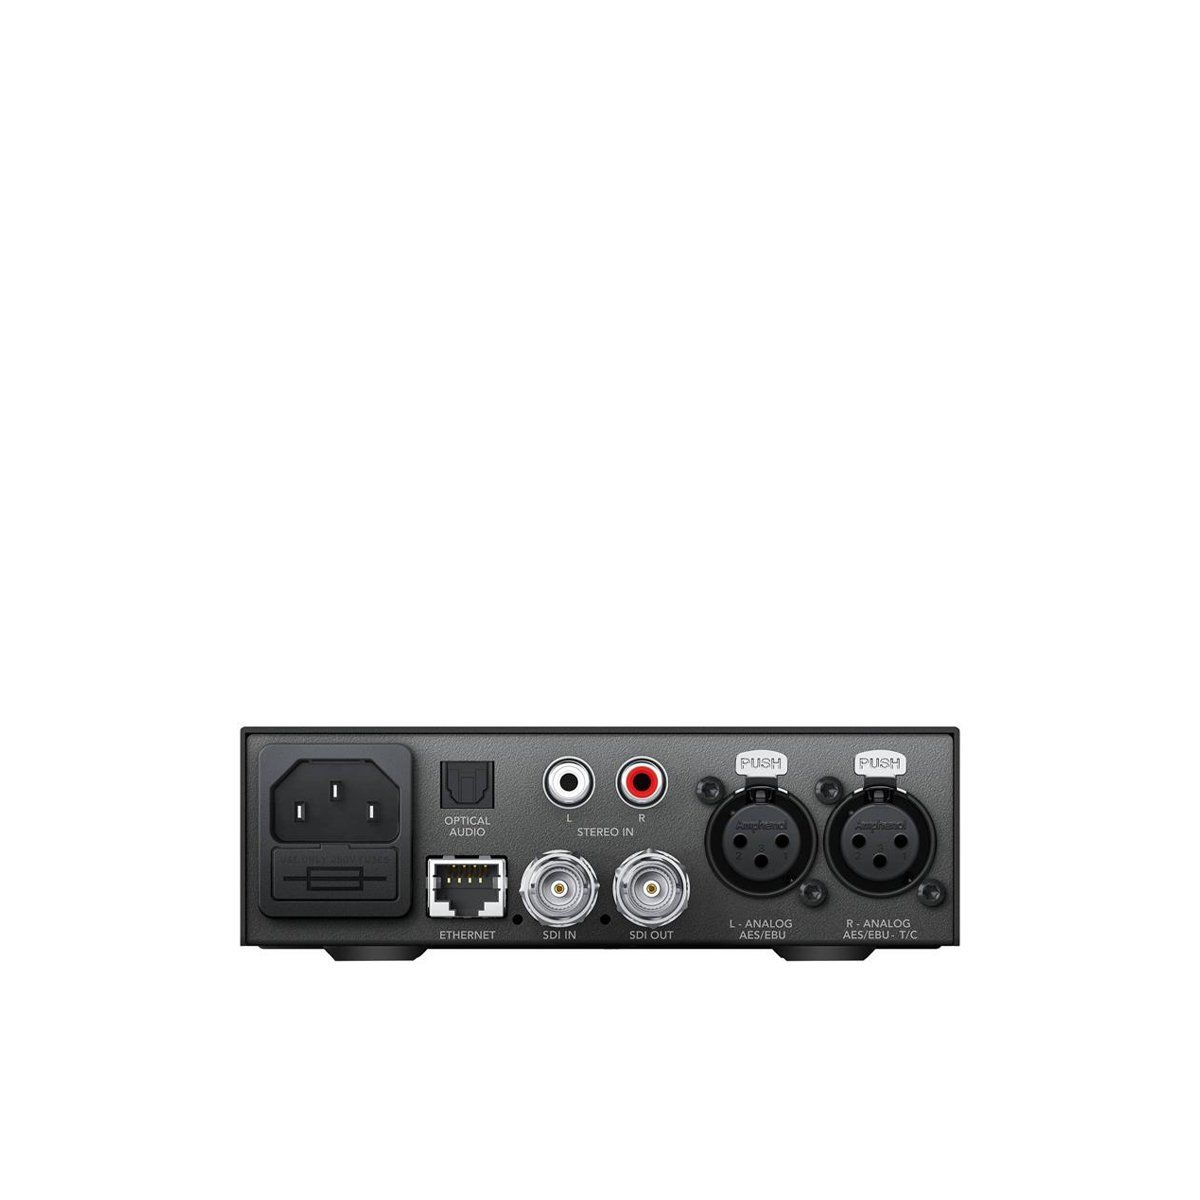  BlackMagic Teranex Mini Audio to SDI 12G 